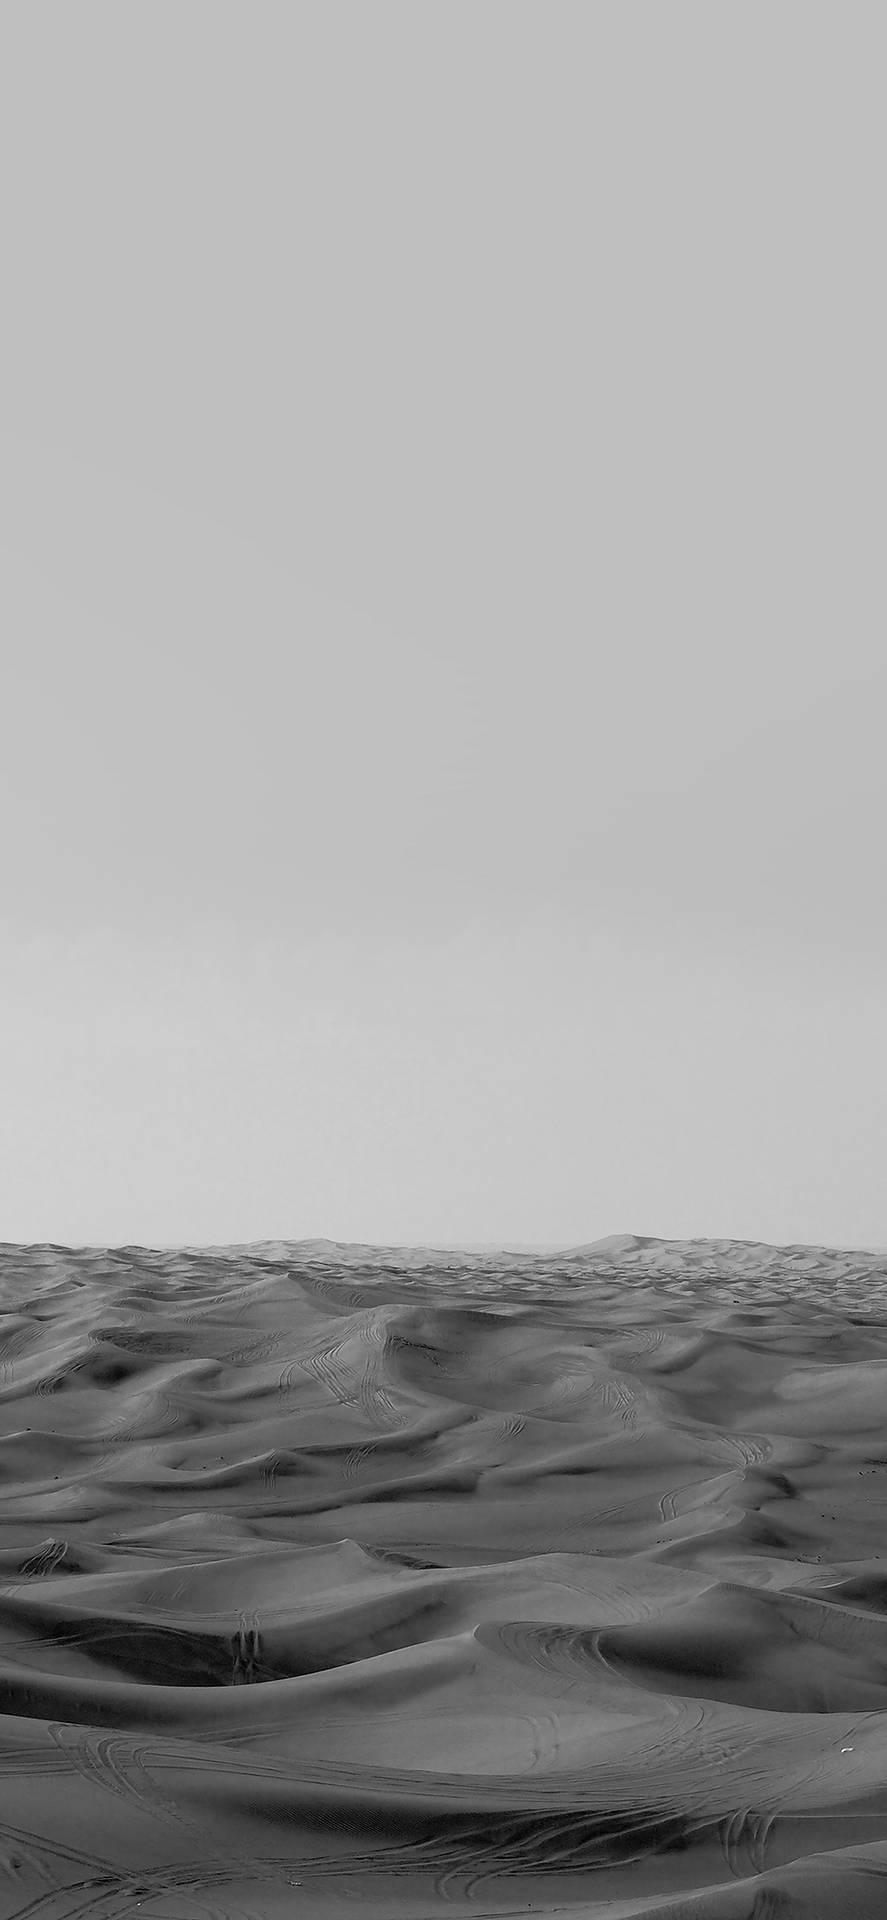 Desert Sand Dunes Minimal Dark Iphone Background